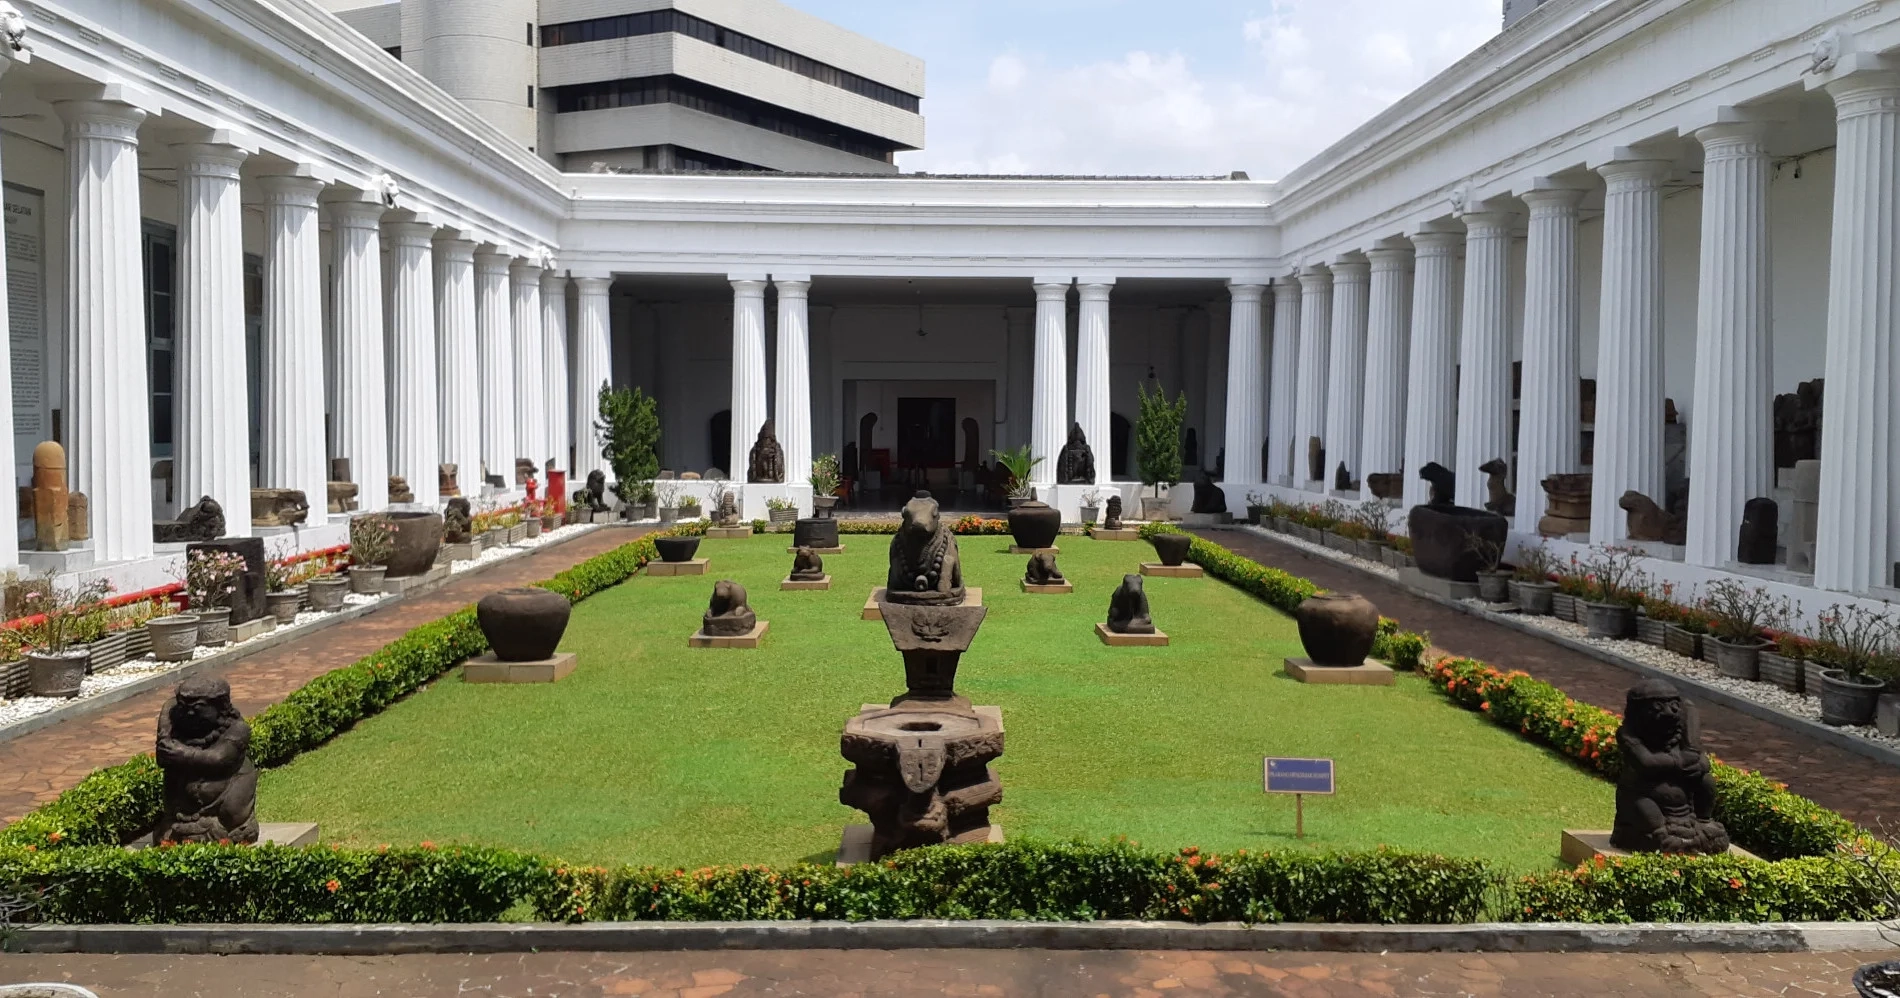 Ada beberapa rekomendasi tempat healing di Jakarta, mulai dari wisata alam sampai wisata seni.